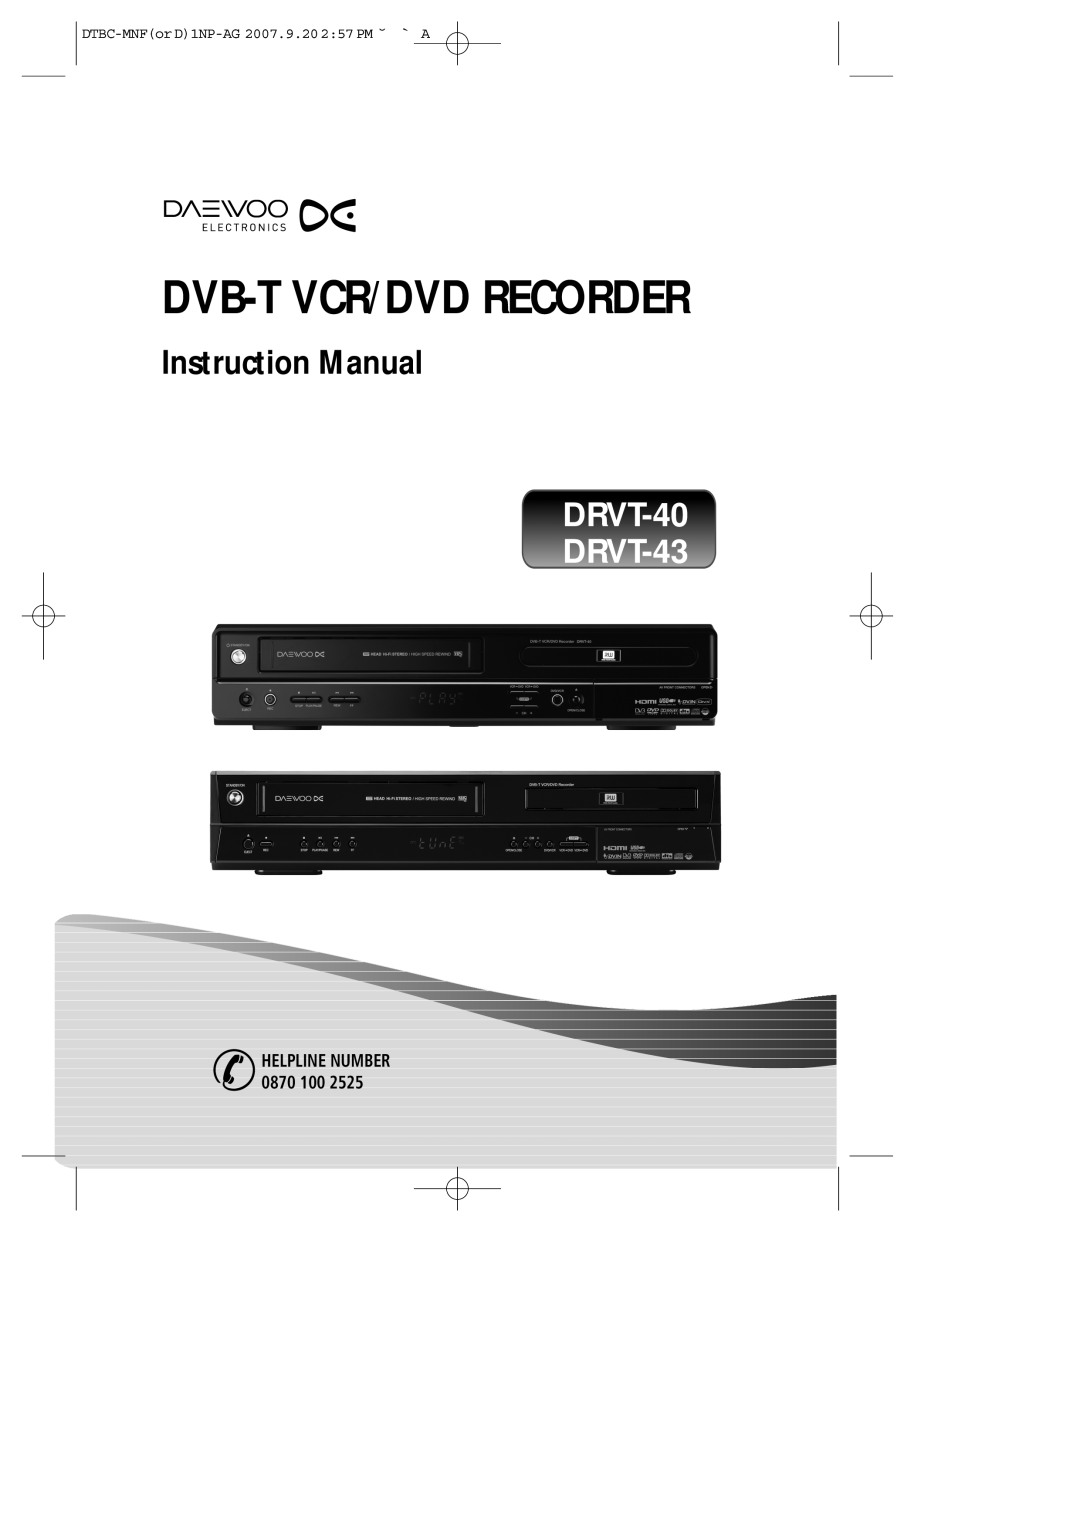 Daewoo instruction manual Dvb-T Vcr/Dvd Recorder, Instruction Manual, DRVT-40 DRVT-43, HELPLINE NUMBER 0870 100 